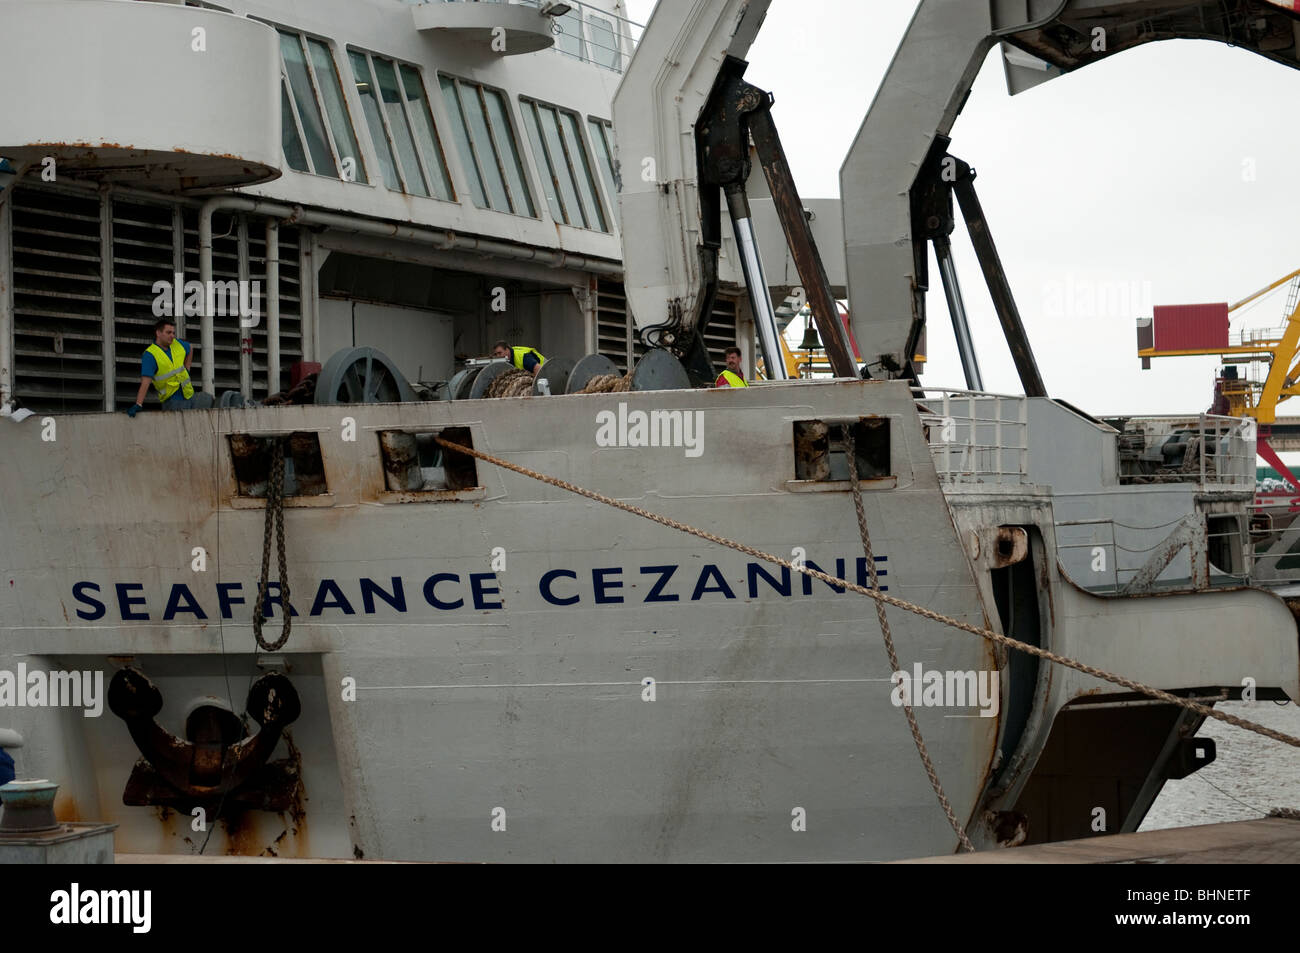 Seafrance Cezanne traghetto con archetto porte aperte Foto Stock